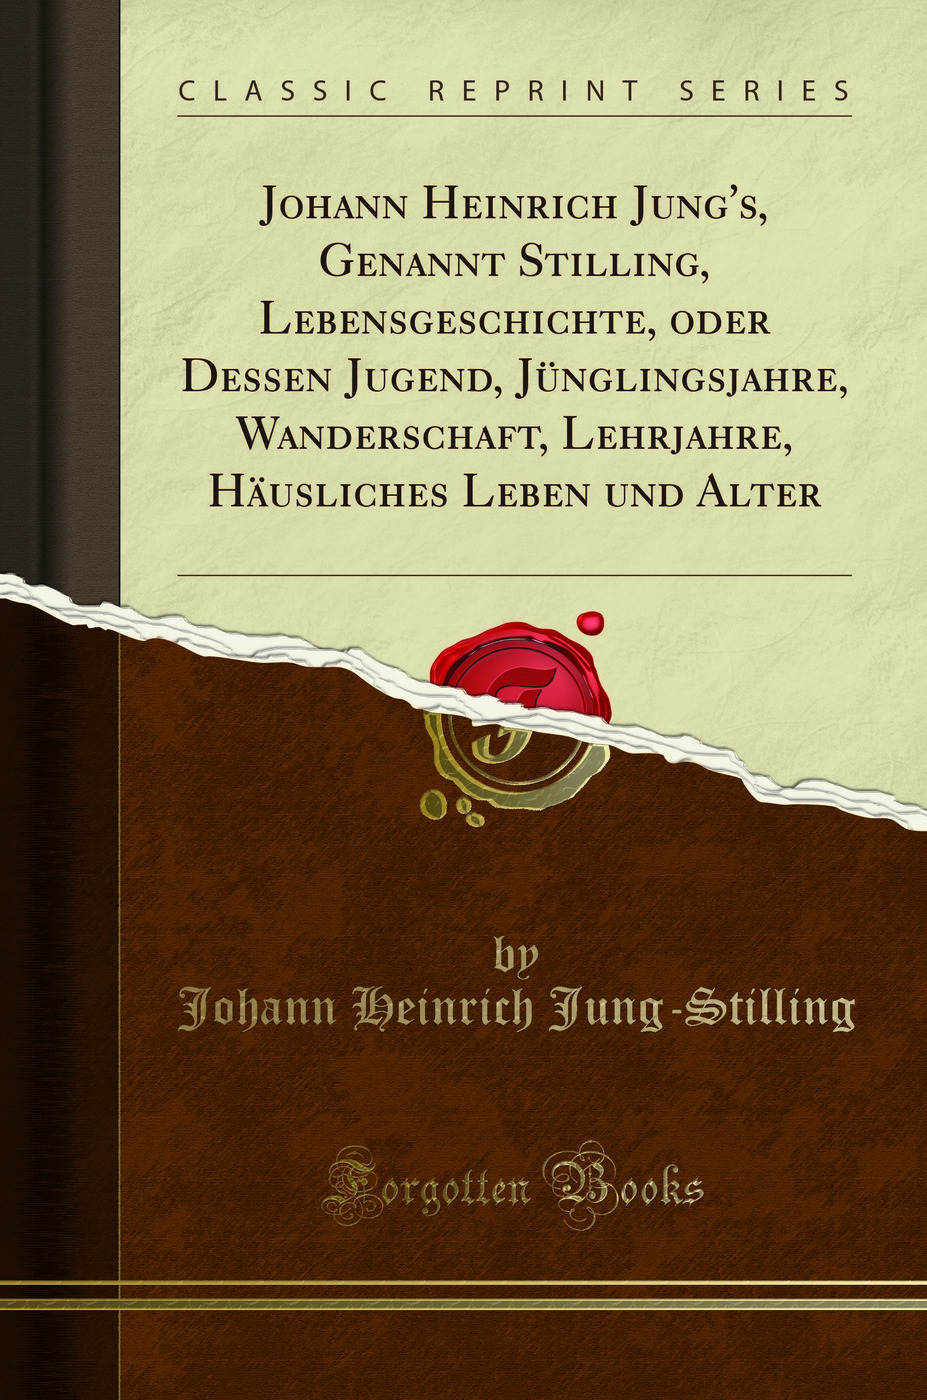 Johann Heinrich Jung's, Genannt Stilling, Lebensgeschichte, oder Dessen Jugend, - Johann Heinrich Jung-Stilling